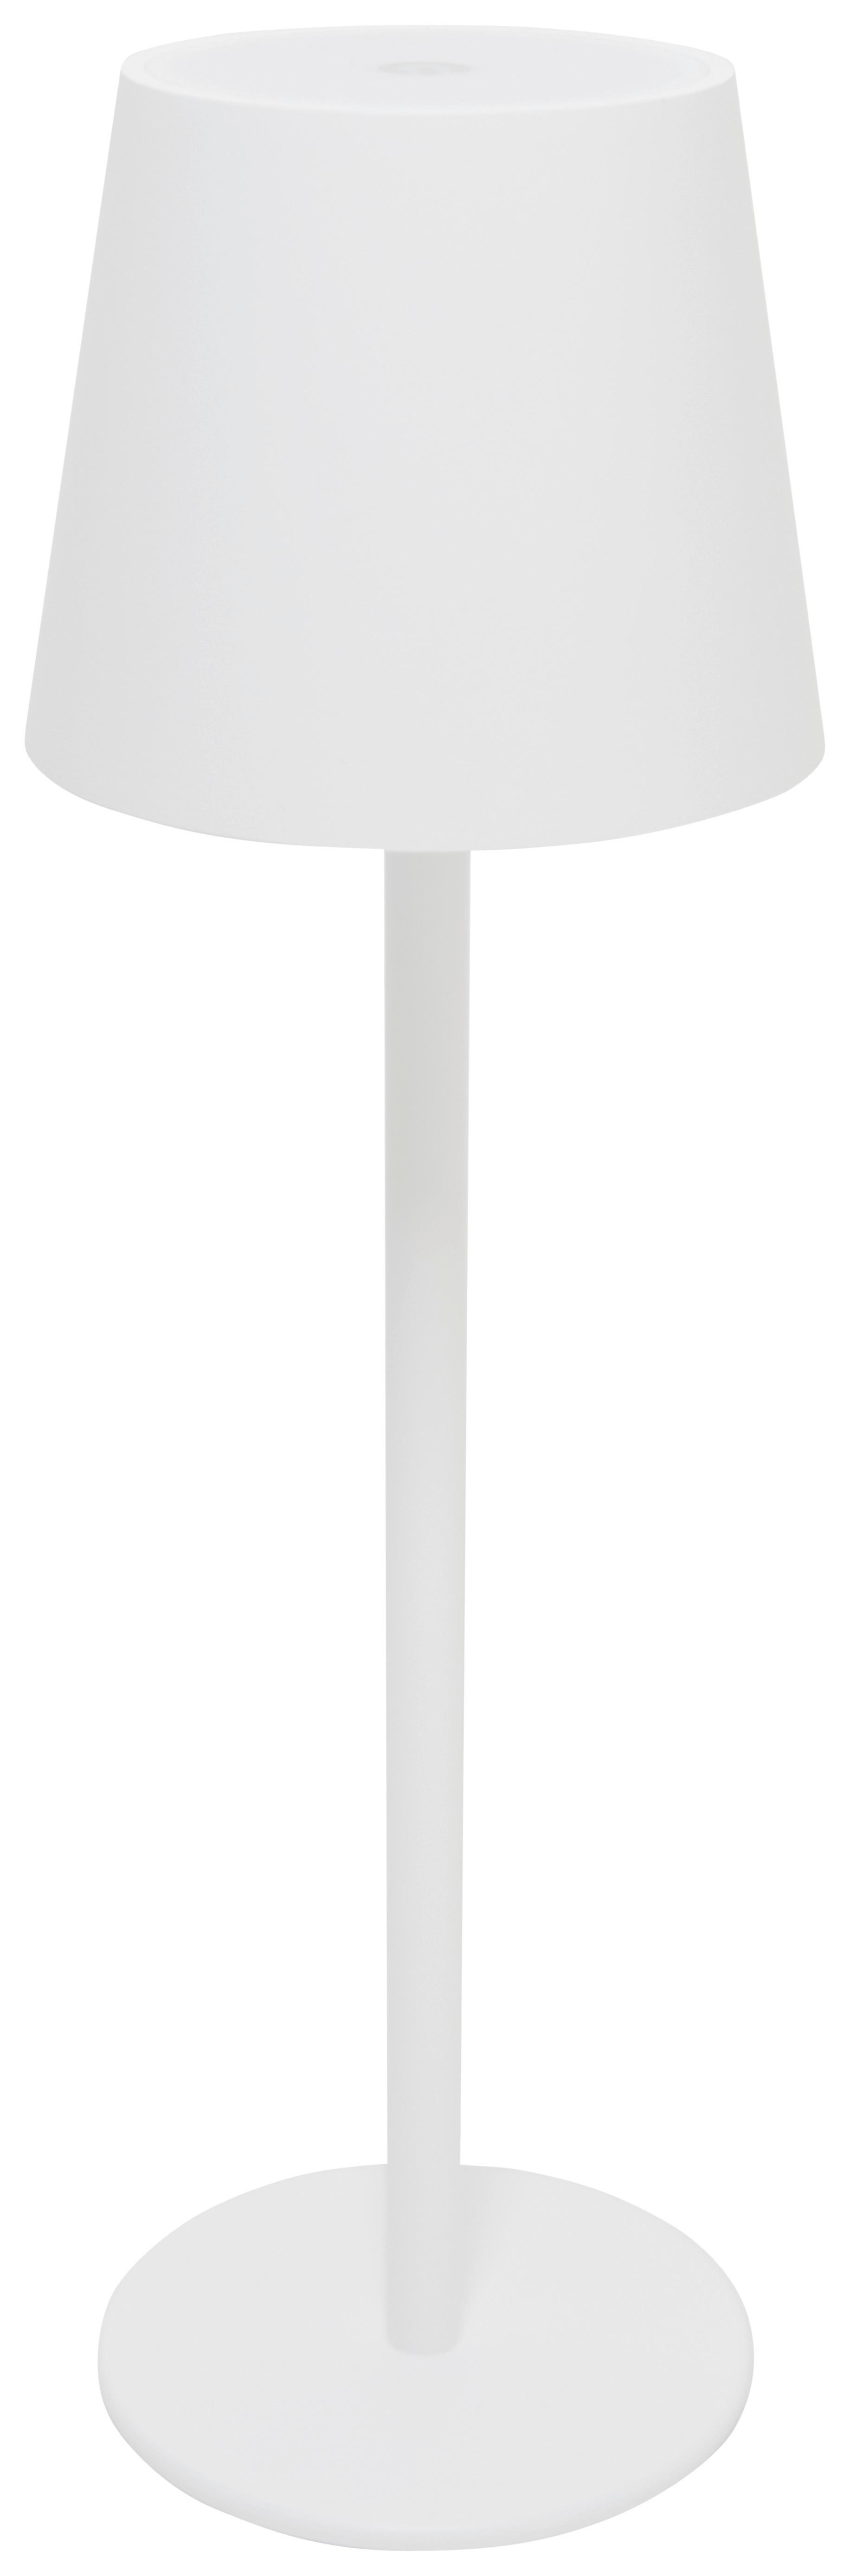 LED-Tischleuchte Noemi in Weiß max. 3 Watt - Weiss, Konventionell, Kunststoff/Metall (11,5/36cm) - Modern Living